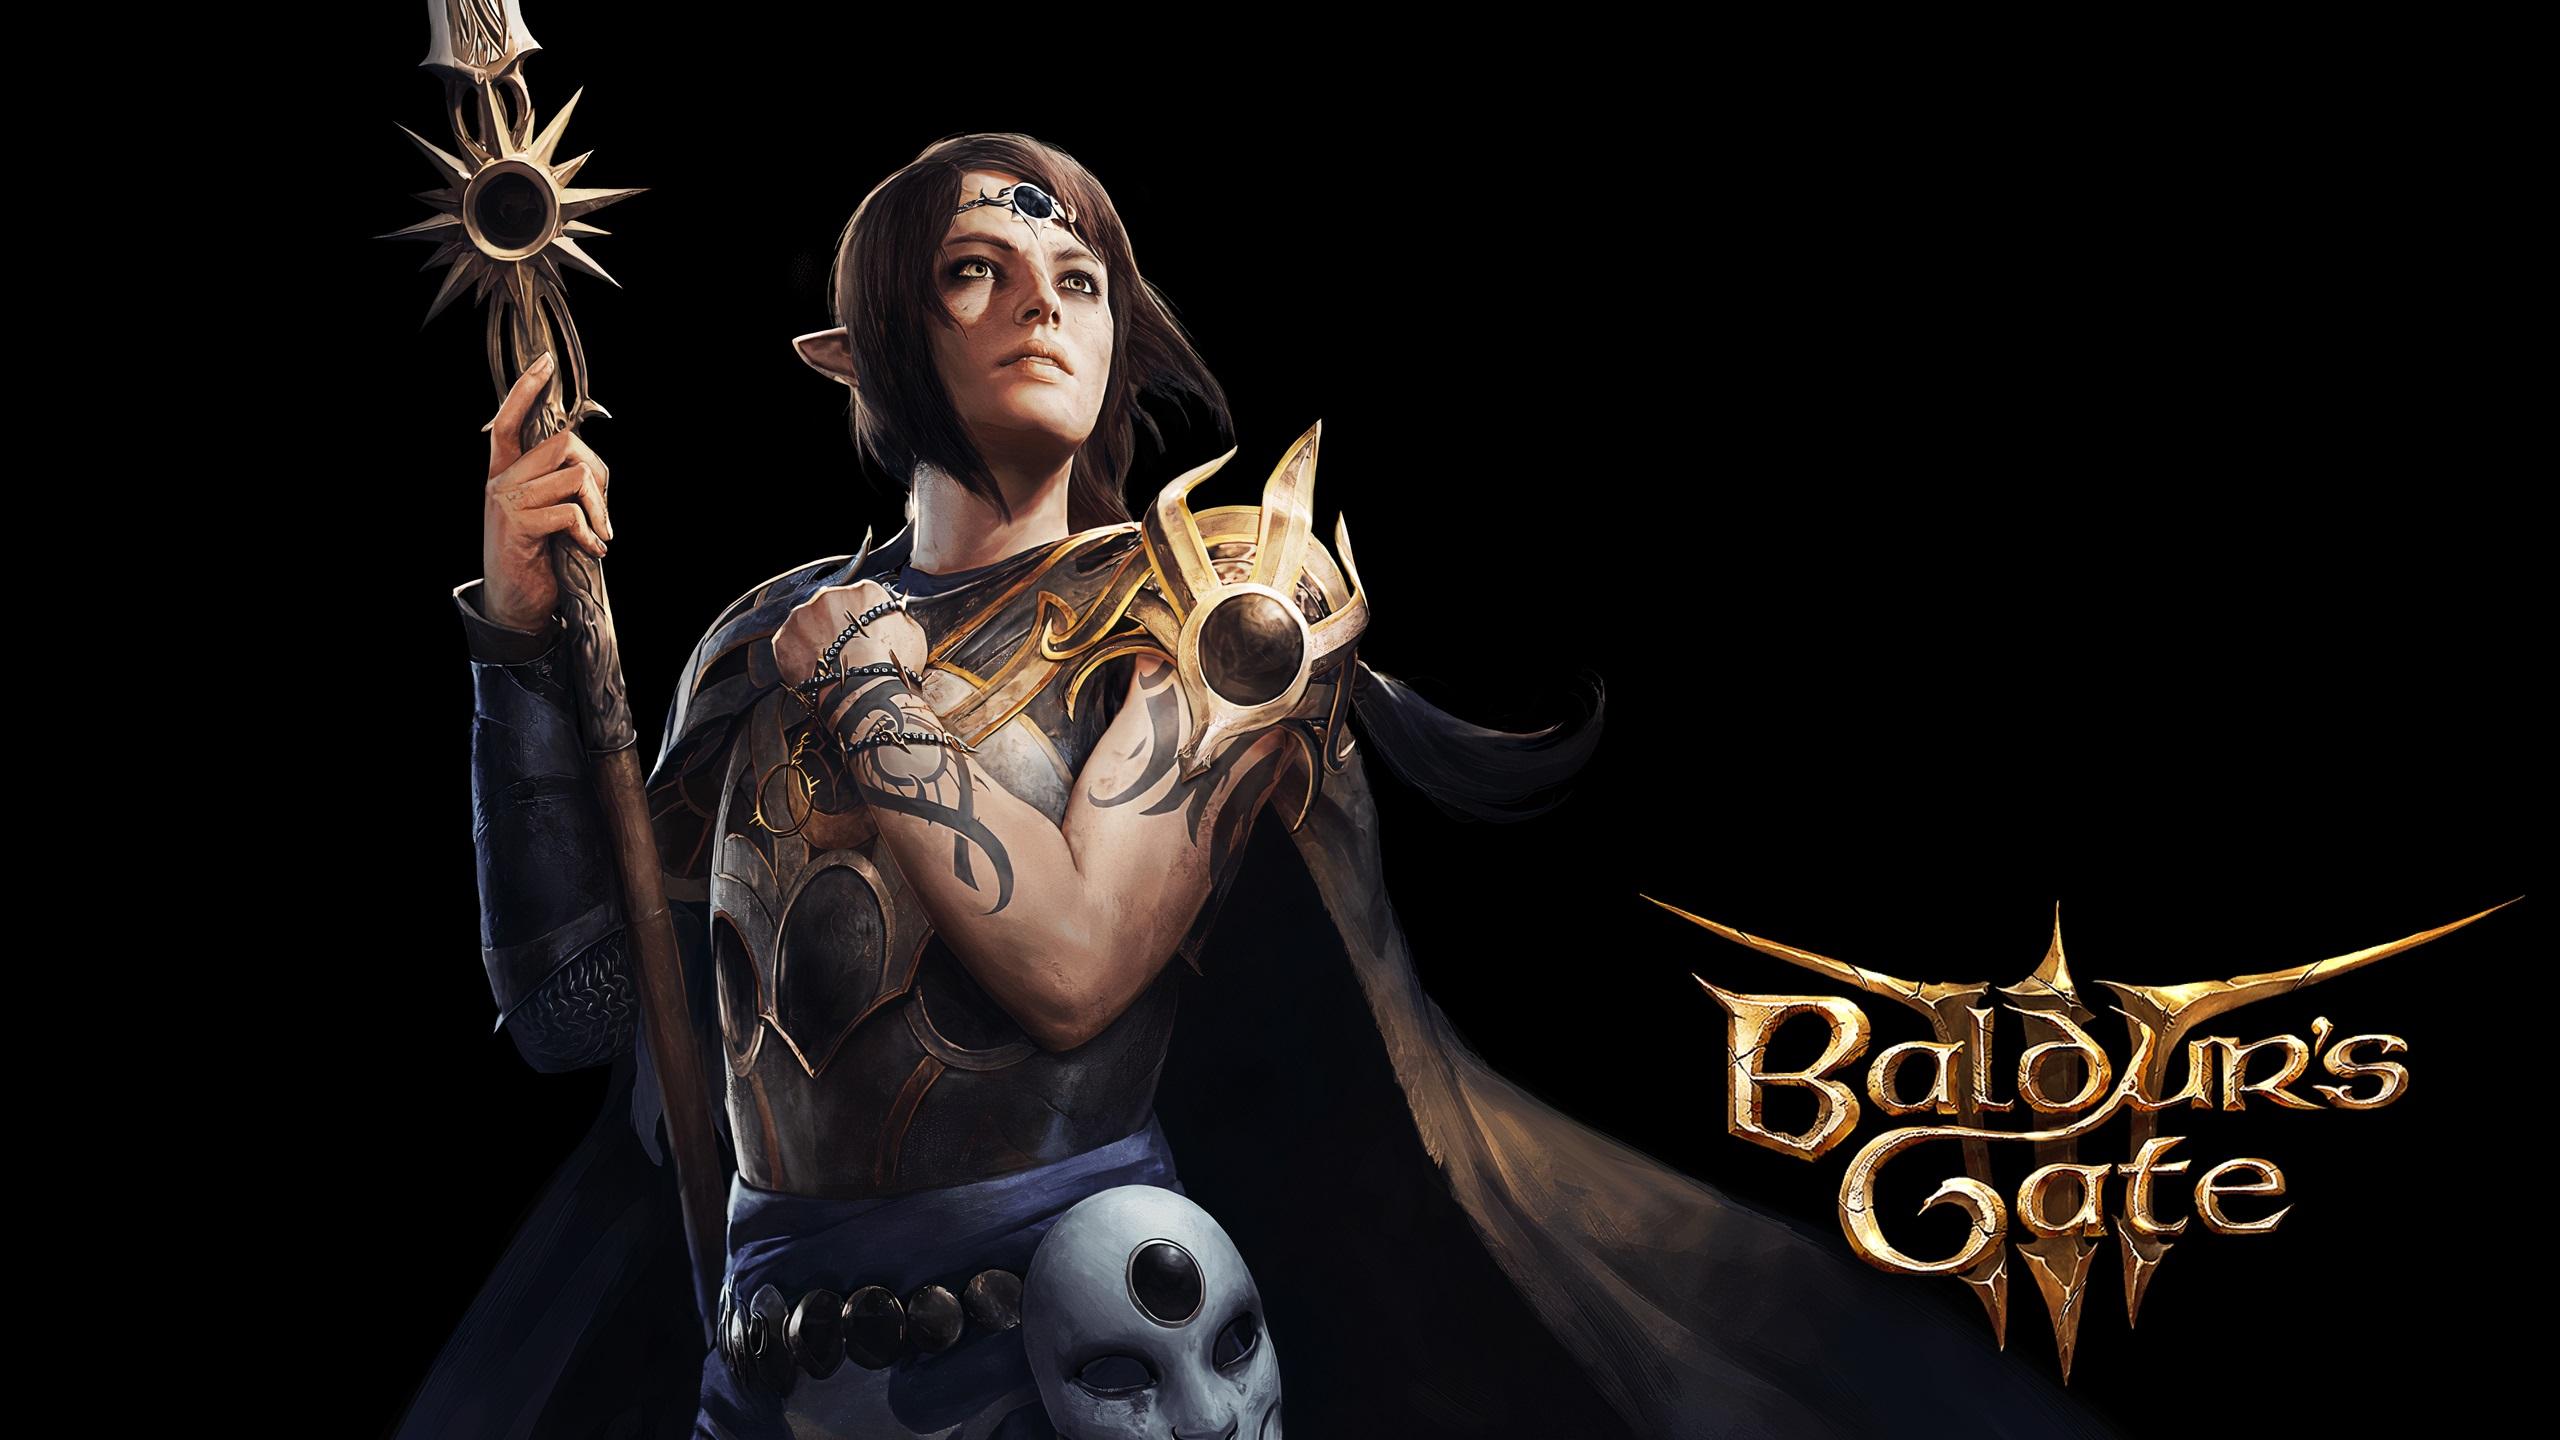 Балдурс гейт 3 персонажи. Asterion Baldur's Gate 3 Art. Baldur's Gate 3 Shadowheart. Baldur's Gate 3 Шэдоухарт арт. Baldur's Gate 3 компаньоны.